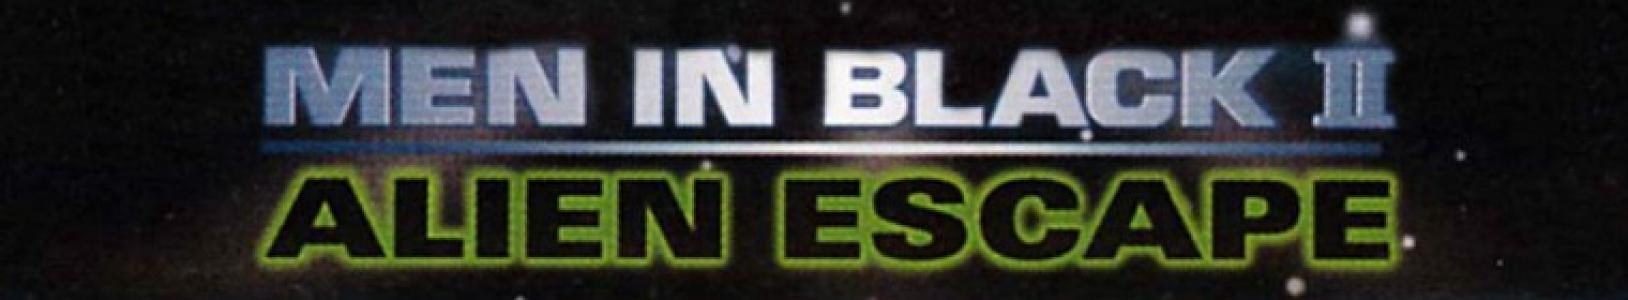 Men in Black II: Alien Escape banner